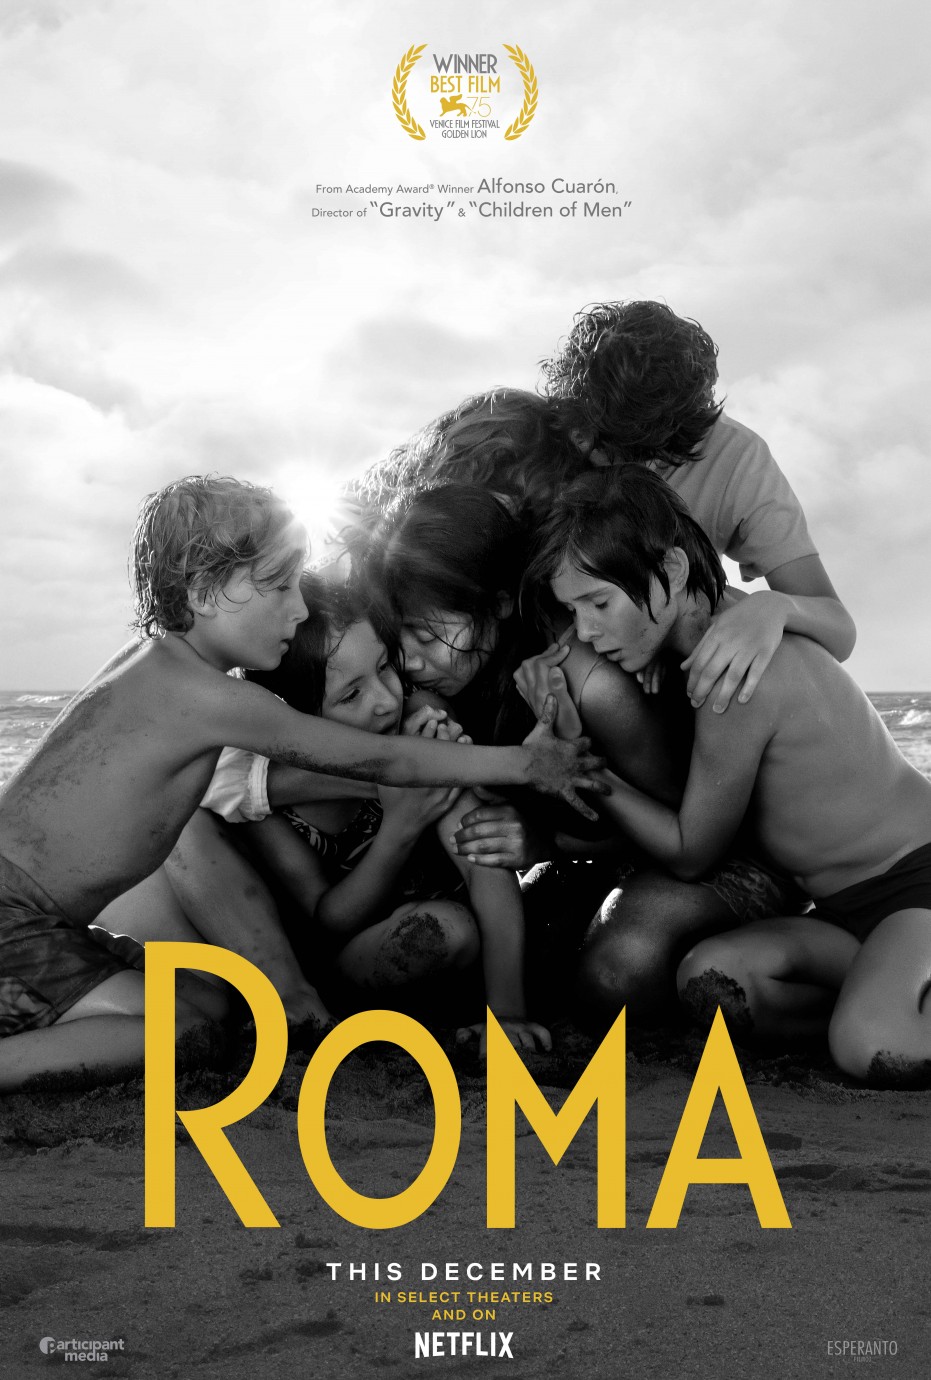 艾方索柯朗獲得威尼斯影展金獅獎的《羅馬》將在金馬影展大銀幕獻映